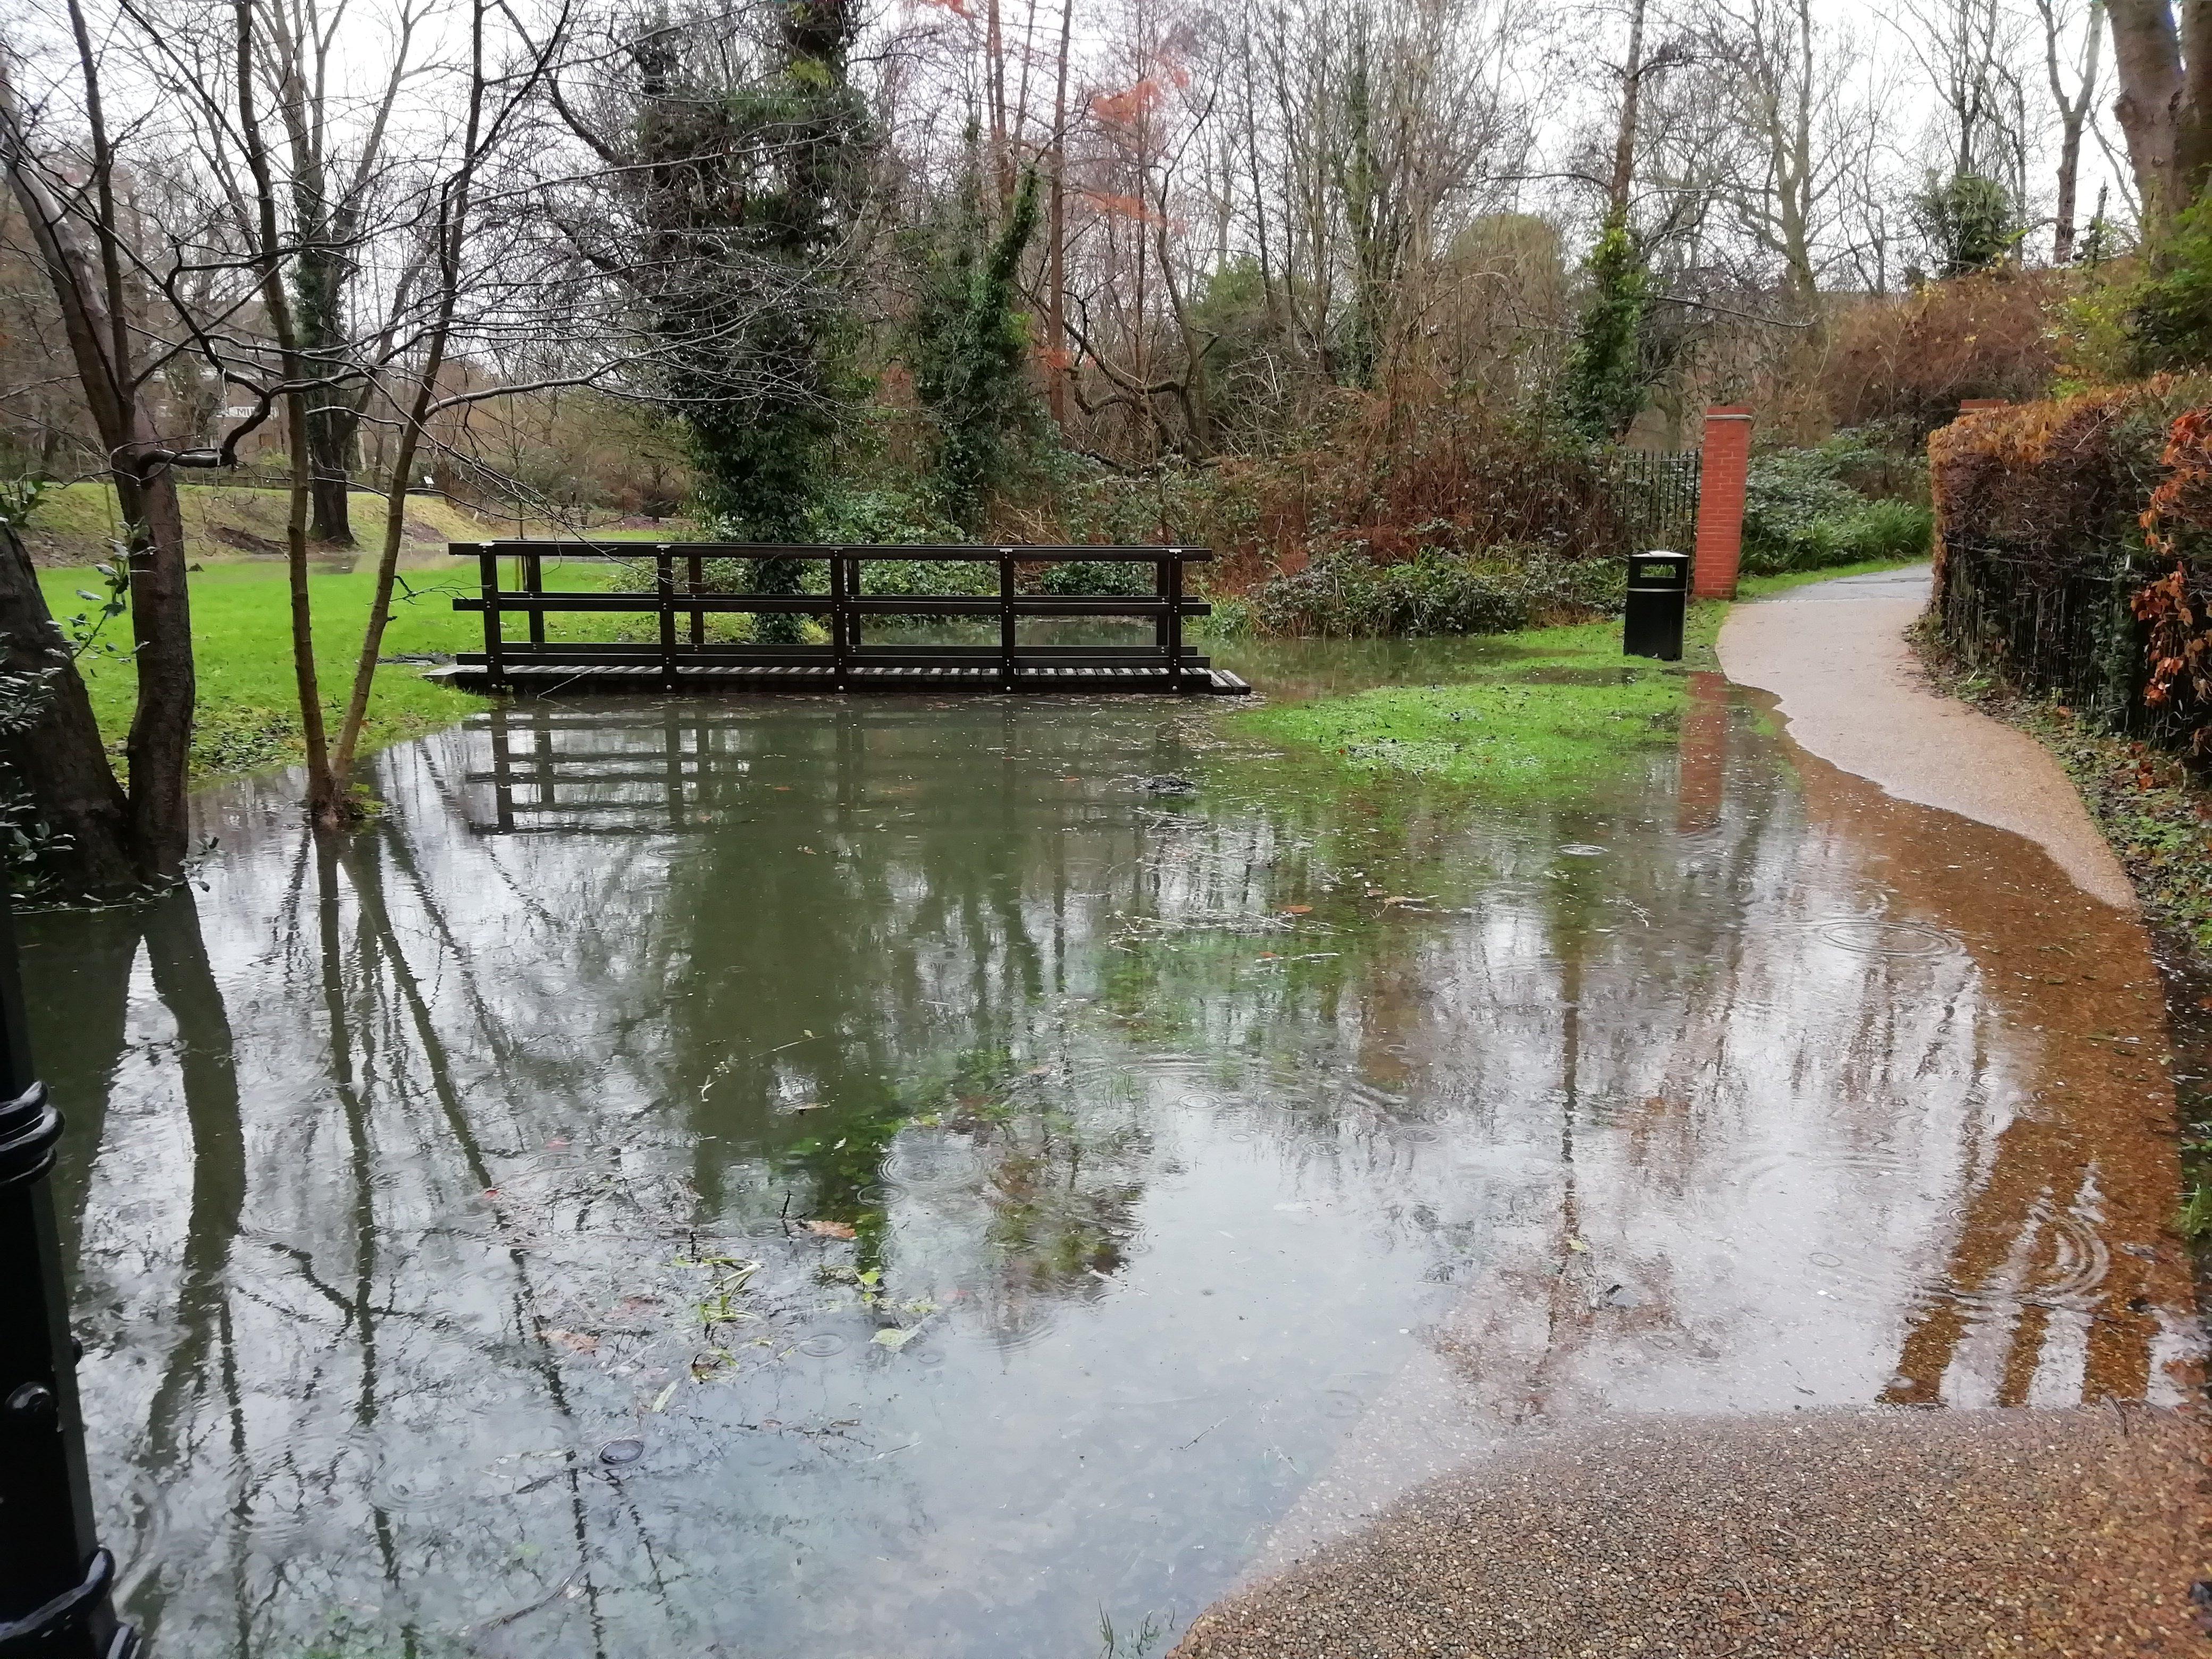 The second footbridge in the garden has been marooned in floodwater